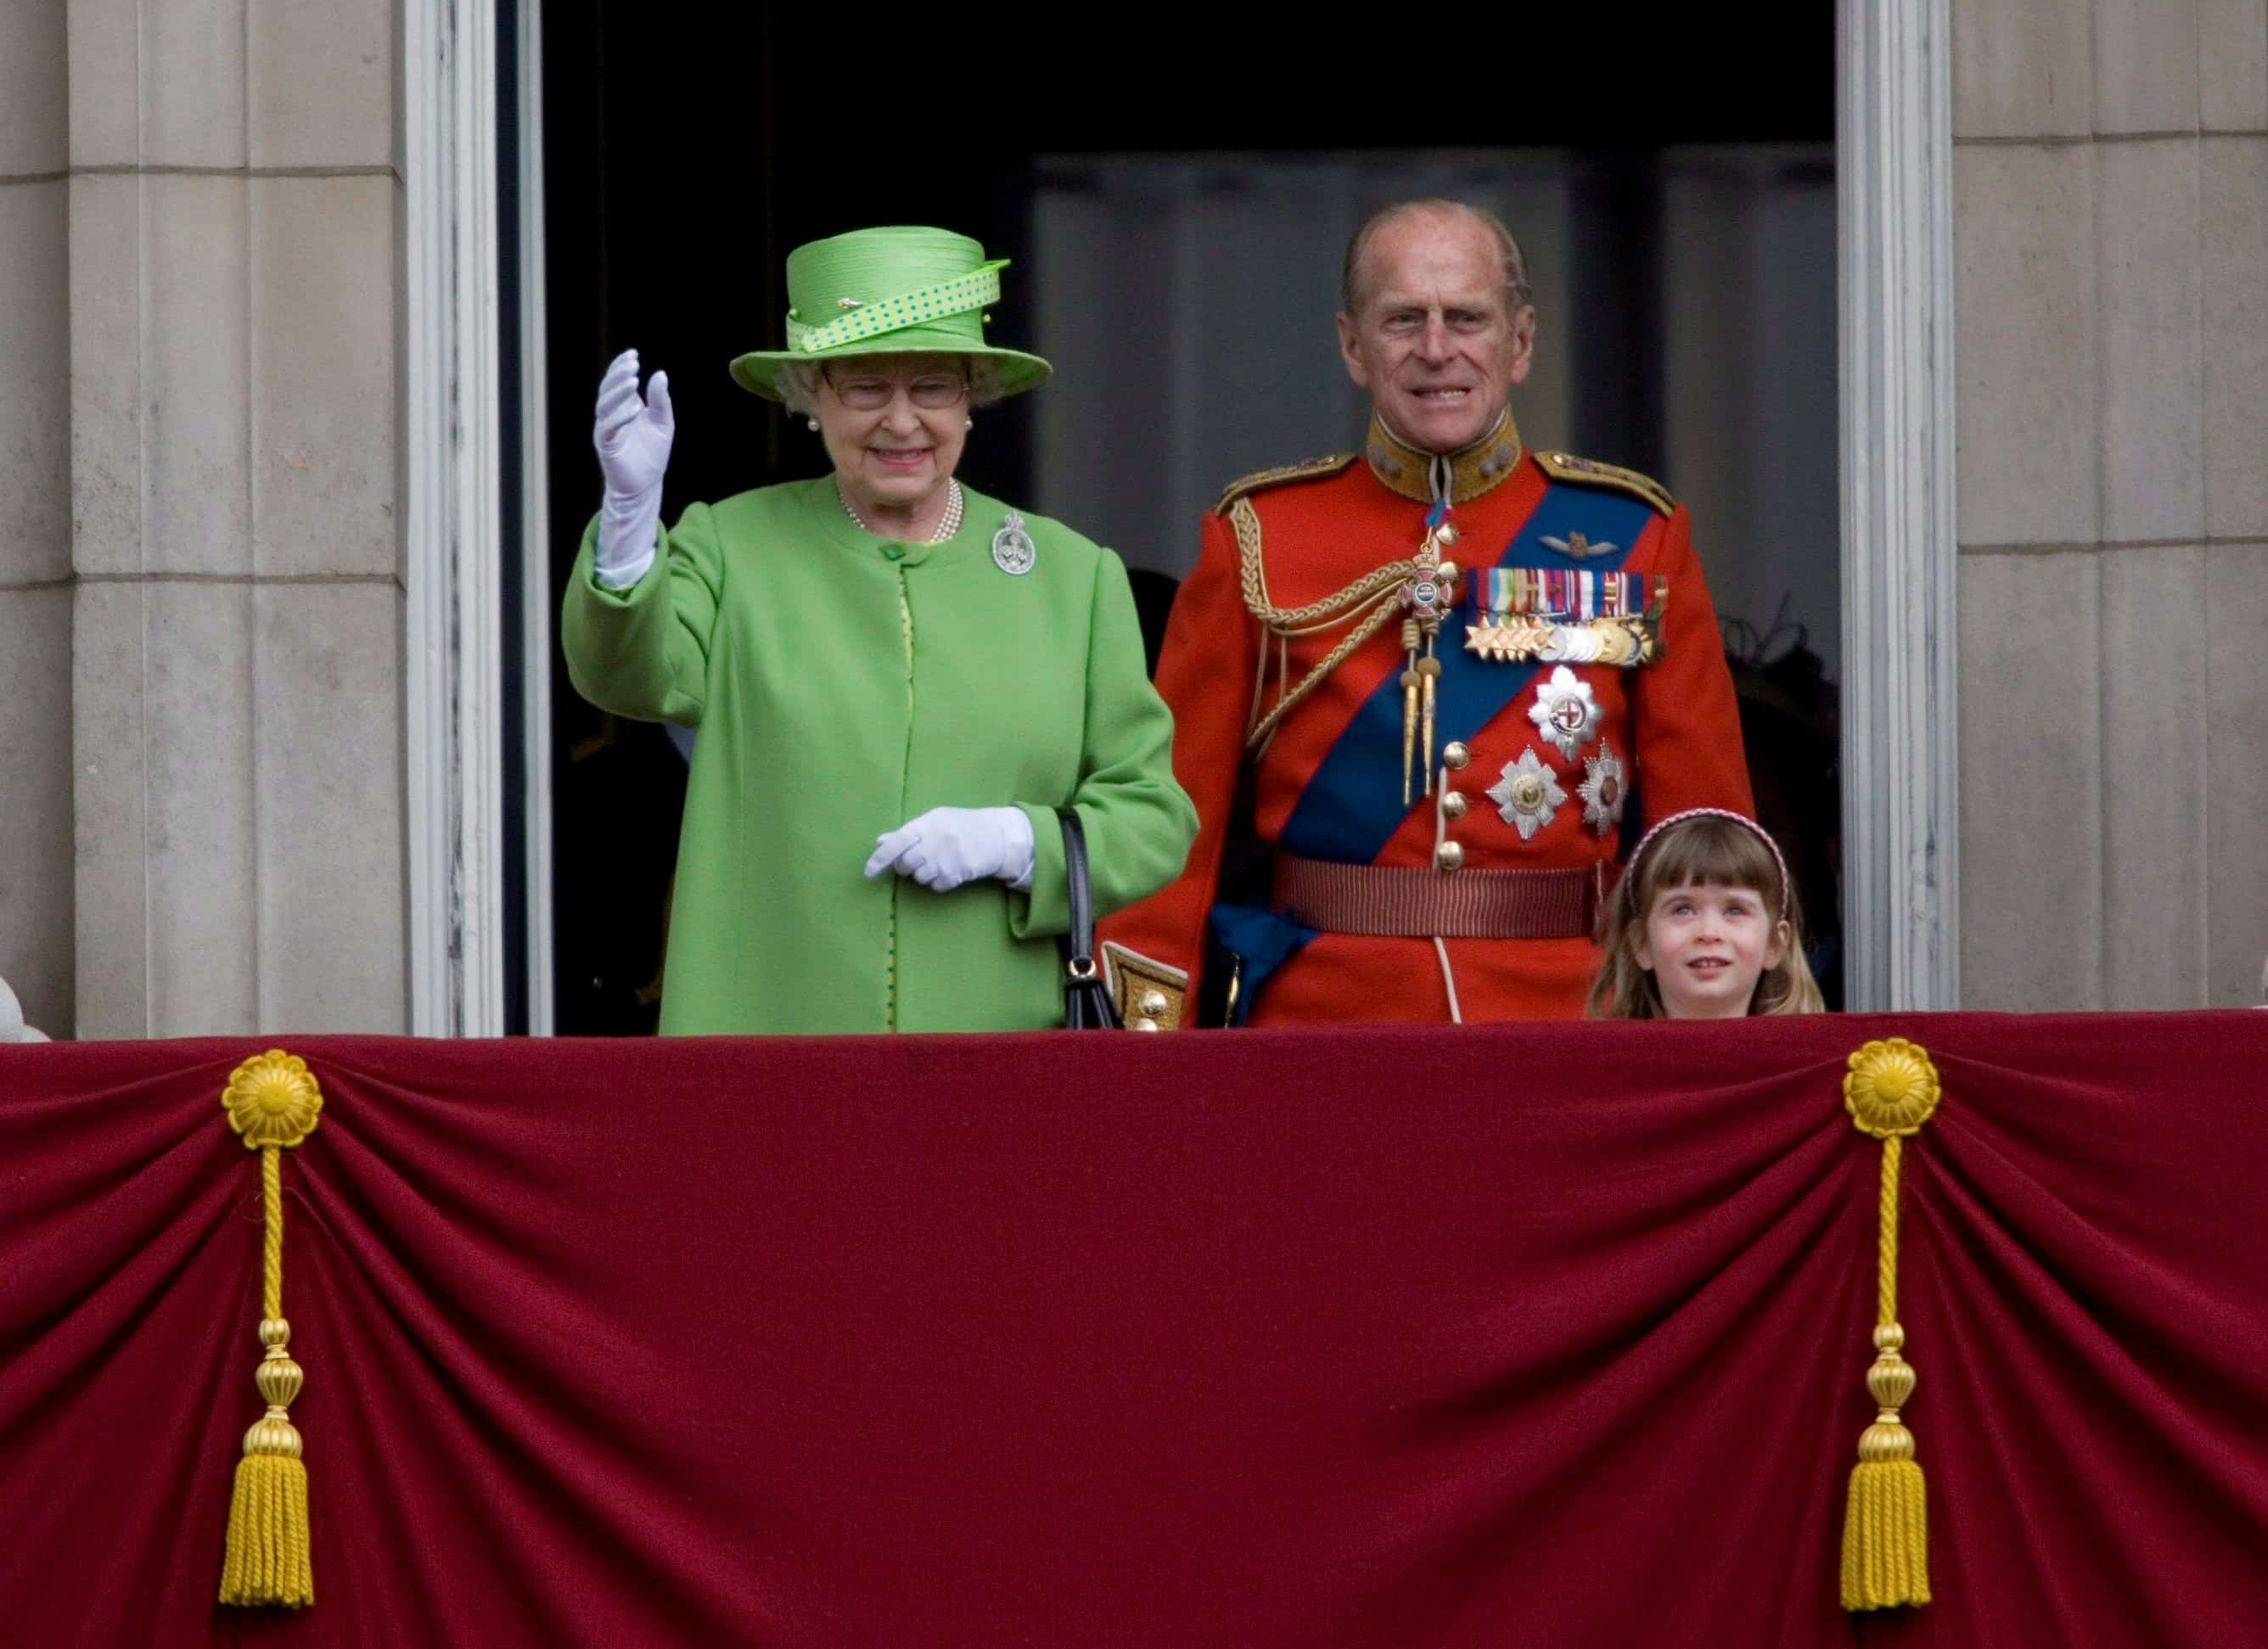 LONDRES (REINO UNIDO), 16.06.07.- La reina Isabel II de Inglaterra (i) y su esposo, el duque Felipe de Edimburgo, saludan desde un balcón durante el desfile militar conocido como Trooping the Colour, que data del siglo XVIII, y que conmemora el 81 cumpleaños de la Reina, en Londres, Reino Unido, el sábado 16 de junio. Aunque Isabel II nació un 21 de abril, su cumpleaños tradicionalmente se festeja de manera oficial en junio para aumentar las posibilidades de que en esta época haga un buen dÌa, de modo que el público pueda ser partícipe. 